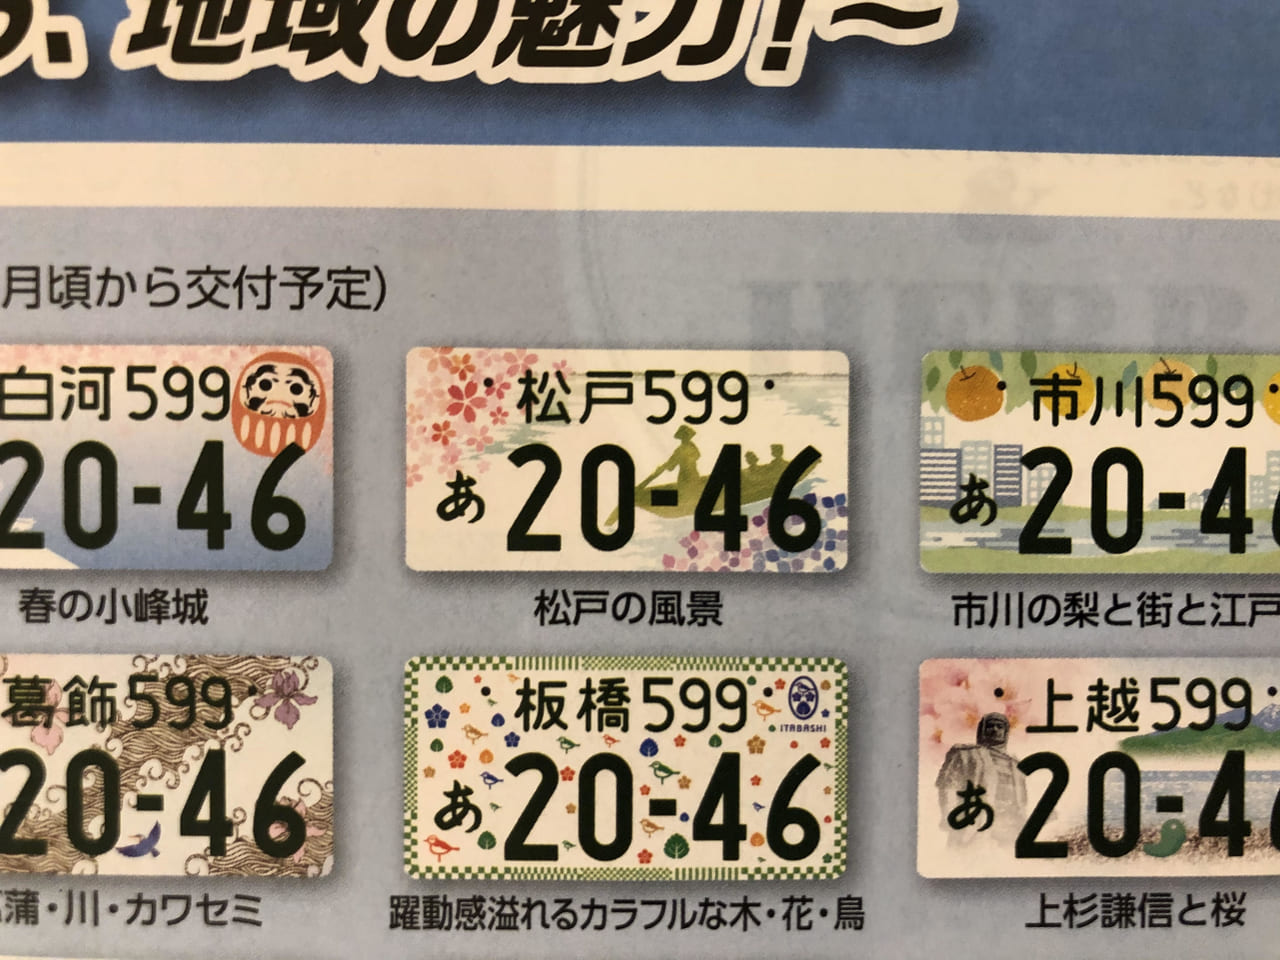 松戸市 令和2年5月頃から新たに 松戸 ナンバーの交付がはじまります 号外net 松戸市